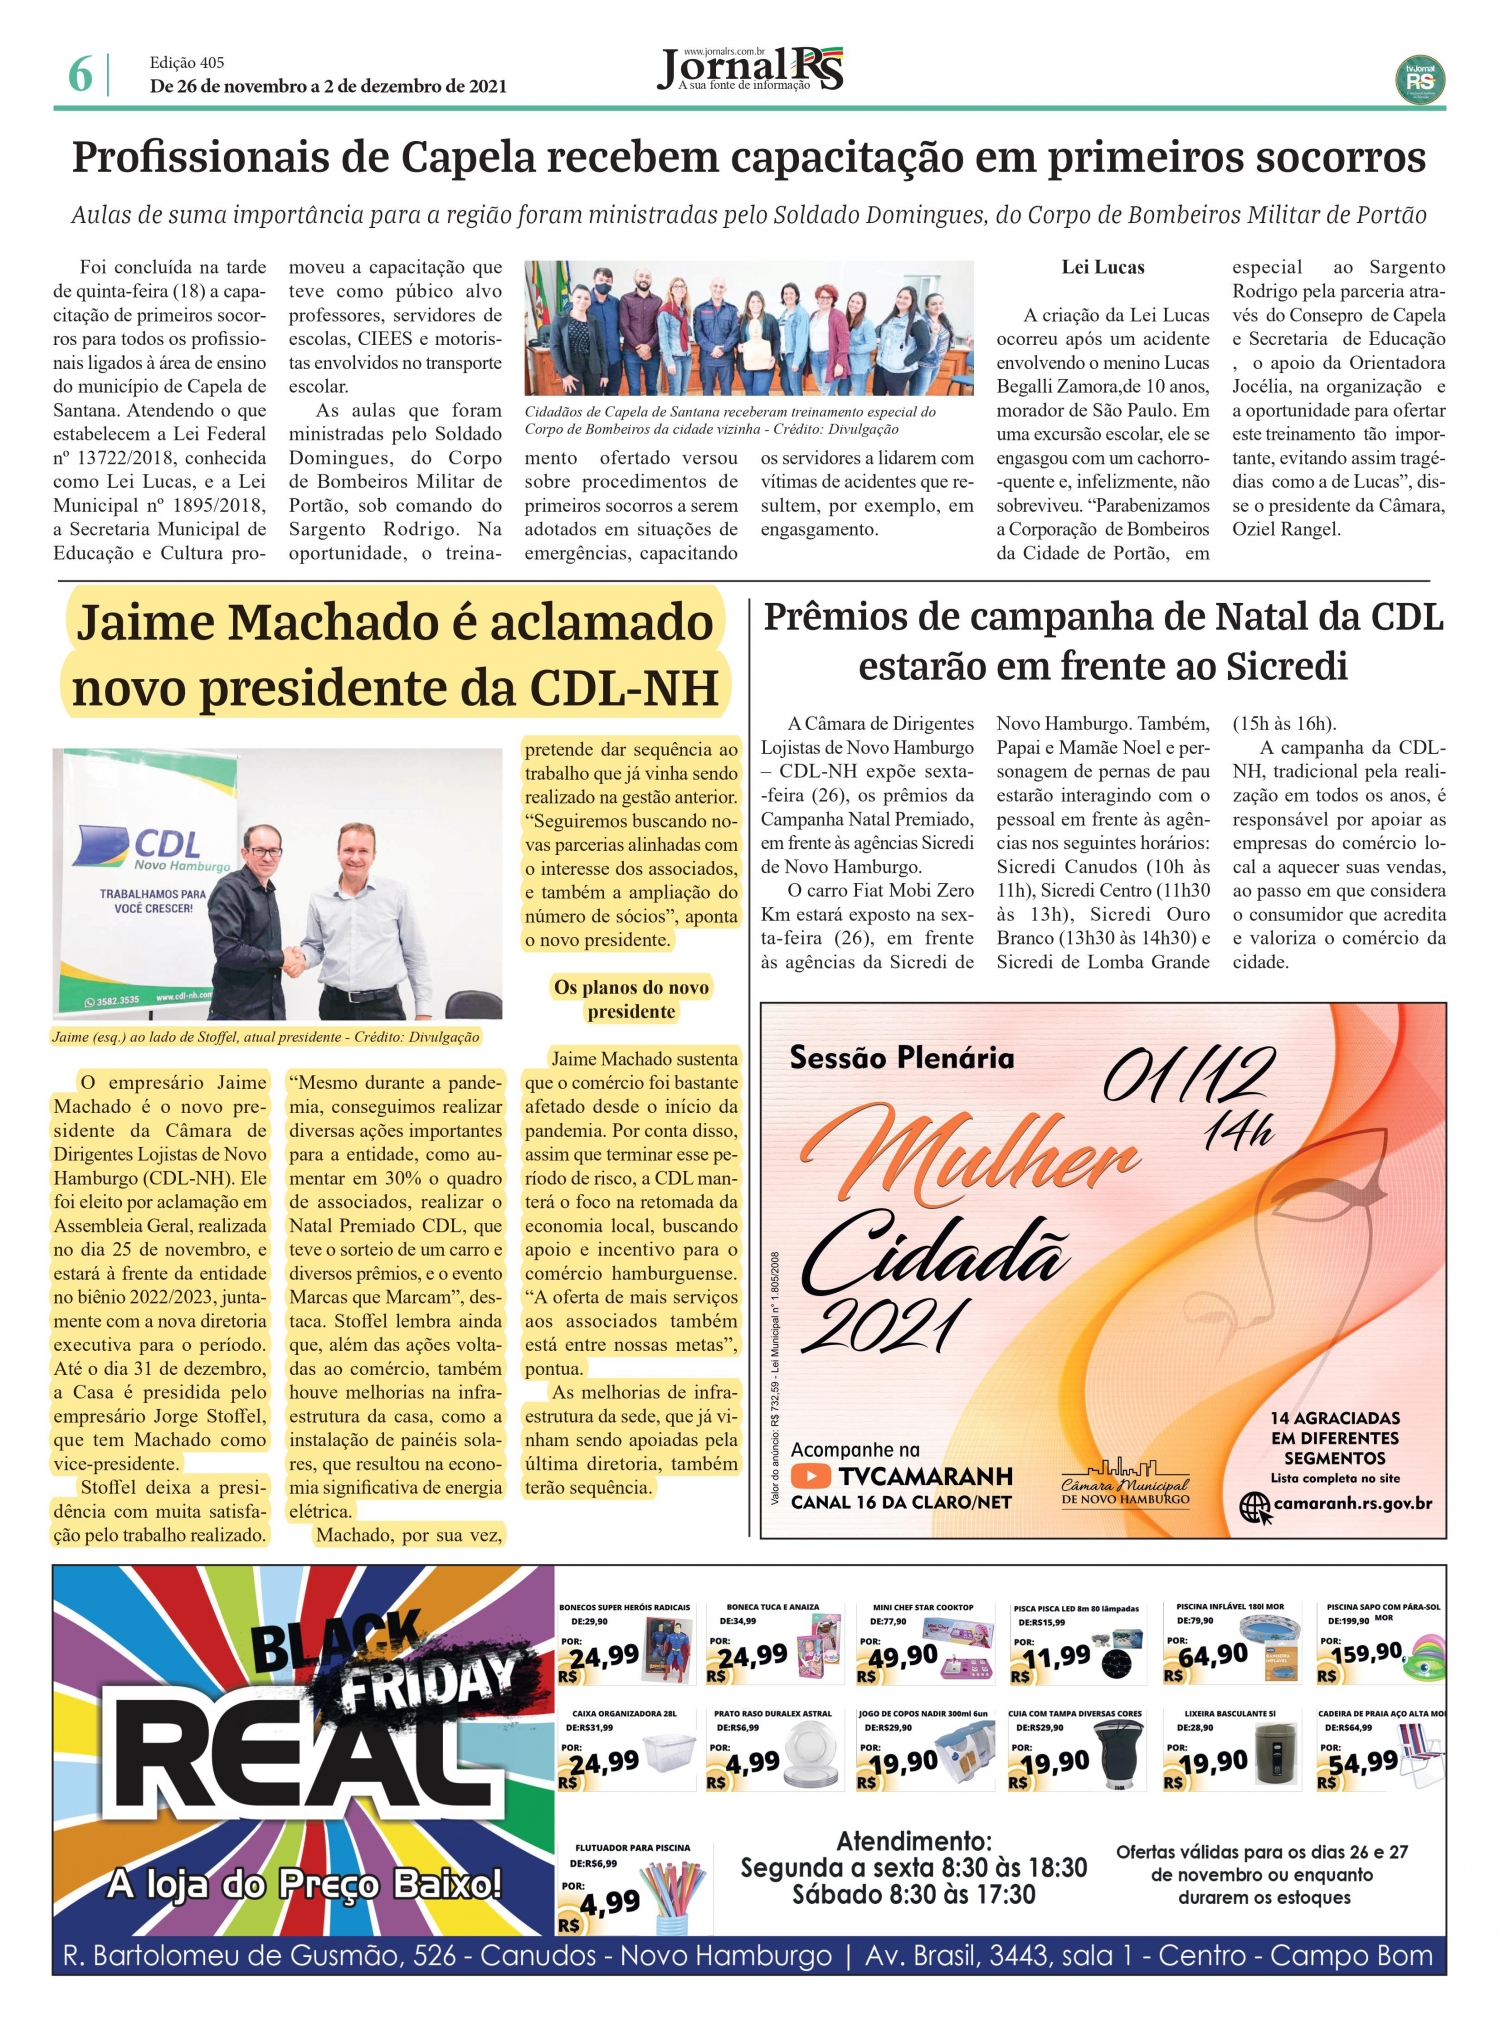 Conheça o novo Presidente da CDL NH, confira notícia em jornal da região!